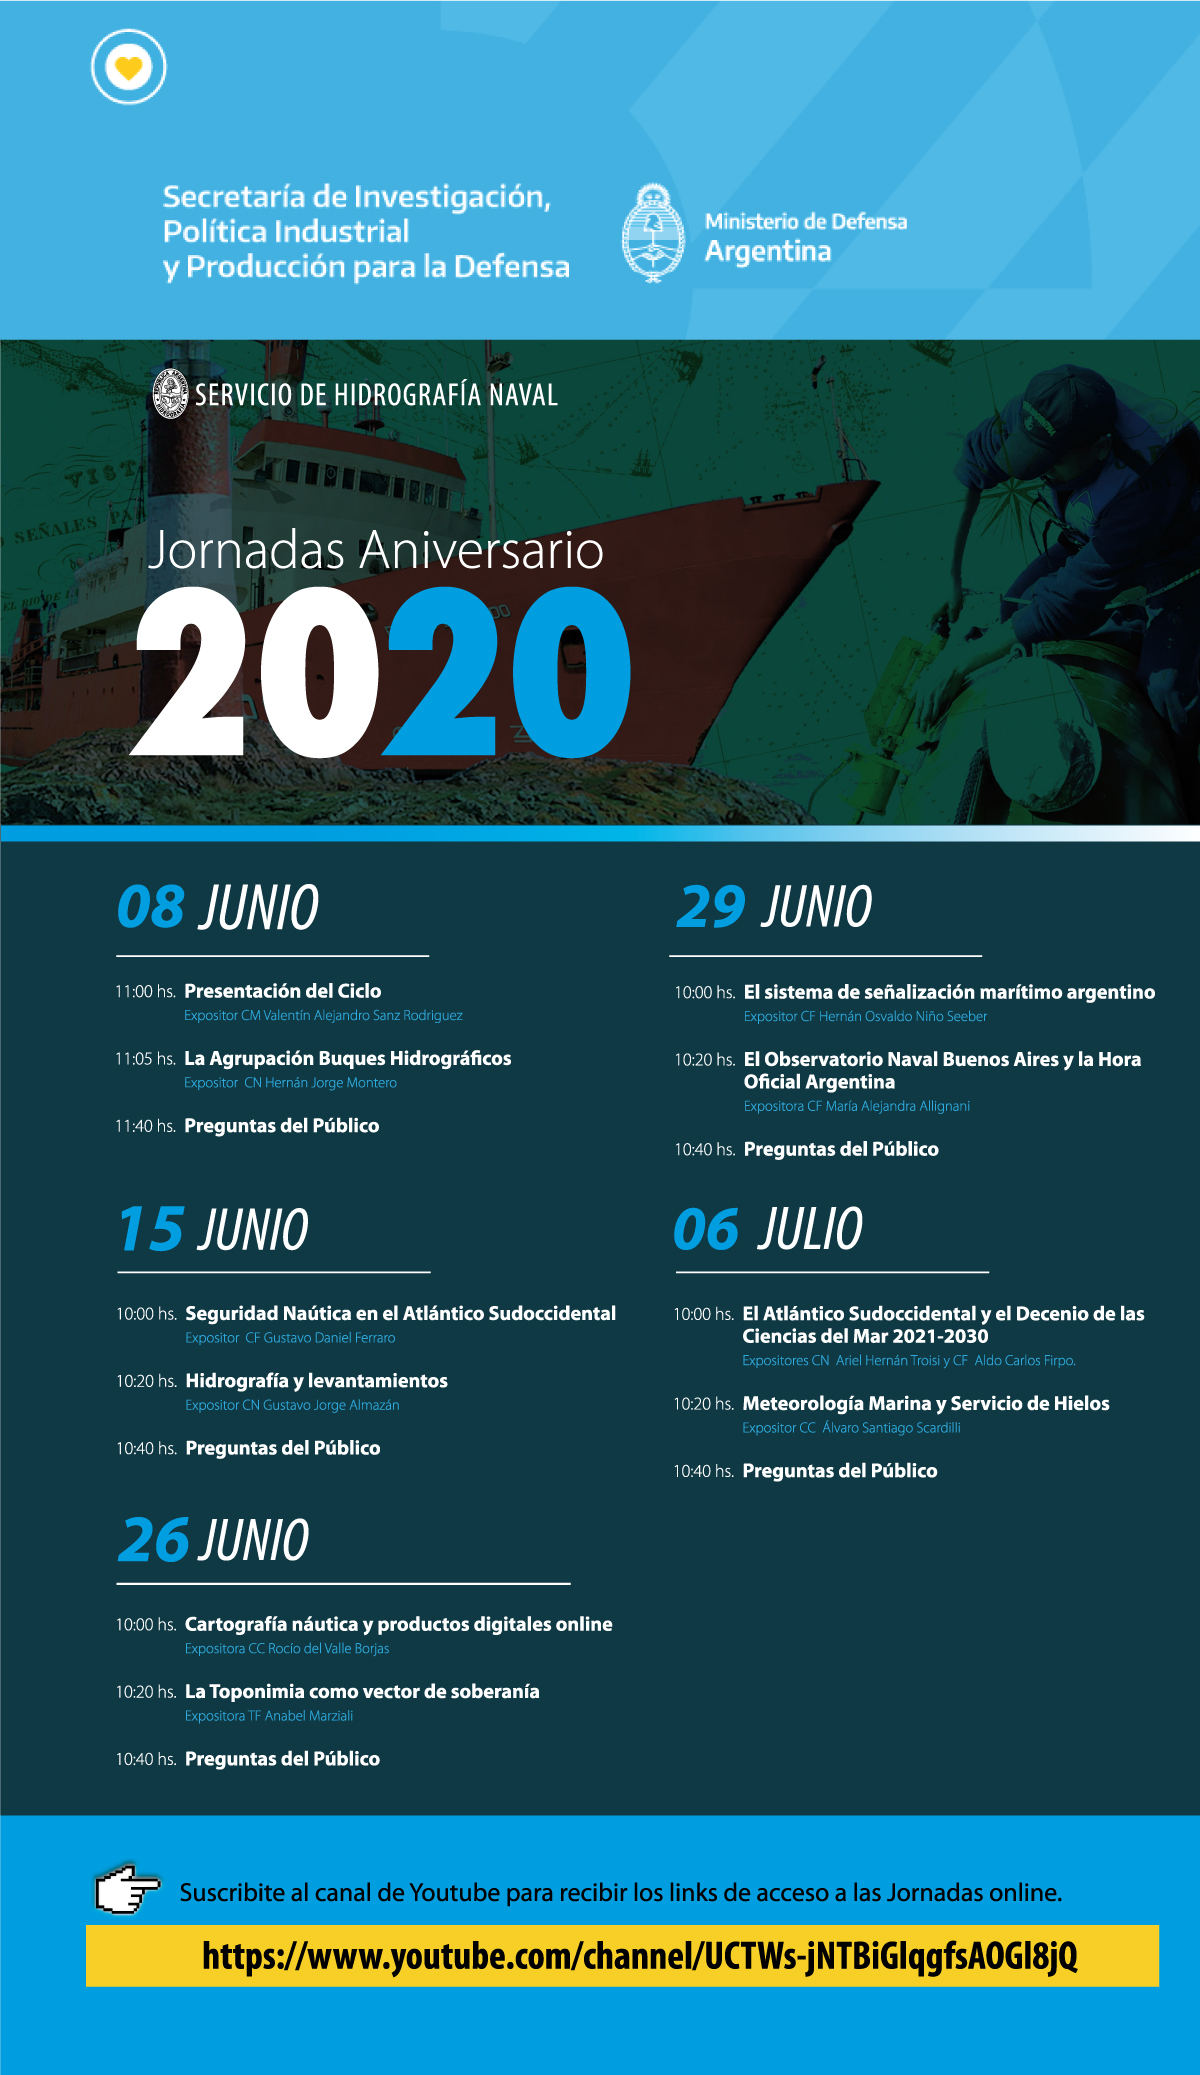 Cronograma de las Jornadas Aniversario 2020